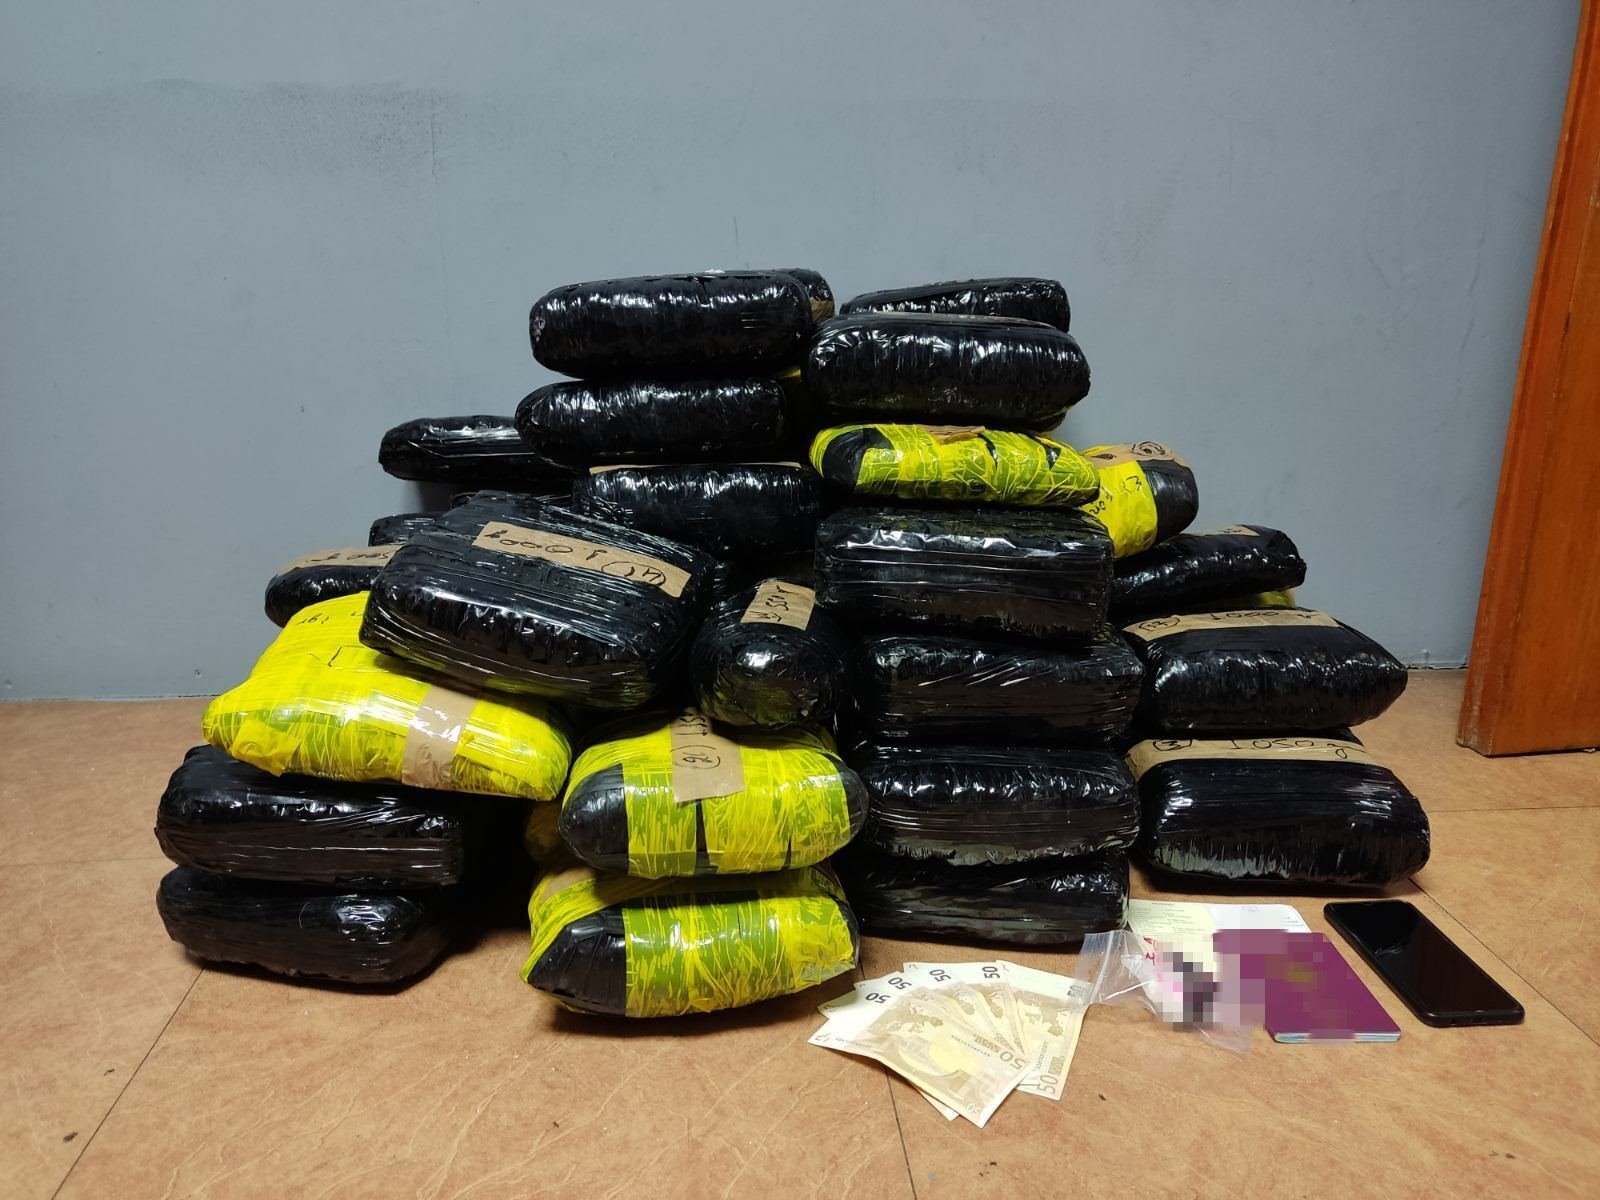 49 κιλά κάνναβης και 24,7 γραμμάρια κοκαΐνης σε κρύπτες αυτοκινήτου στα Ιωάννινα